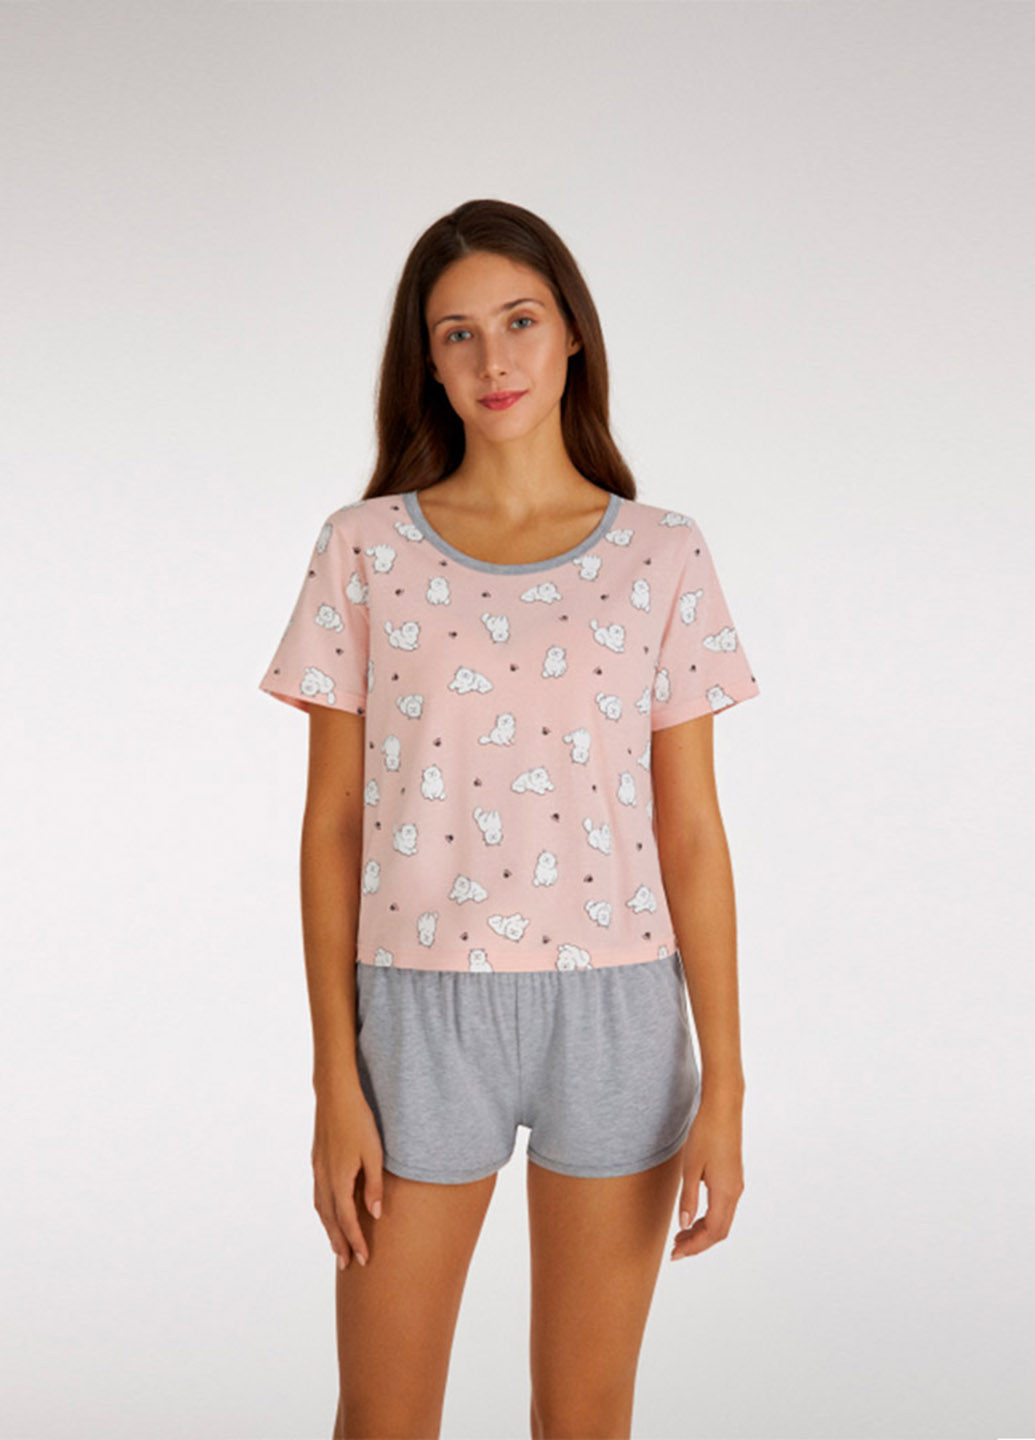 Розовая всесезон пижама (футболка, шорты) футболка + шорты Ellen